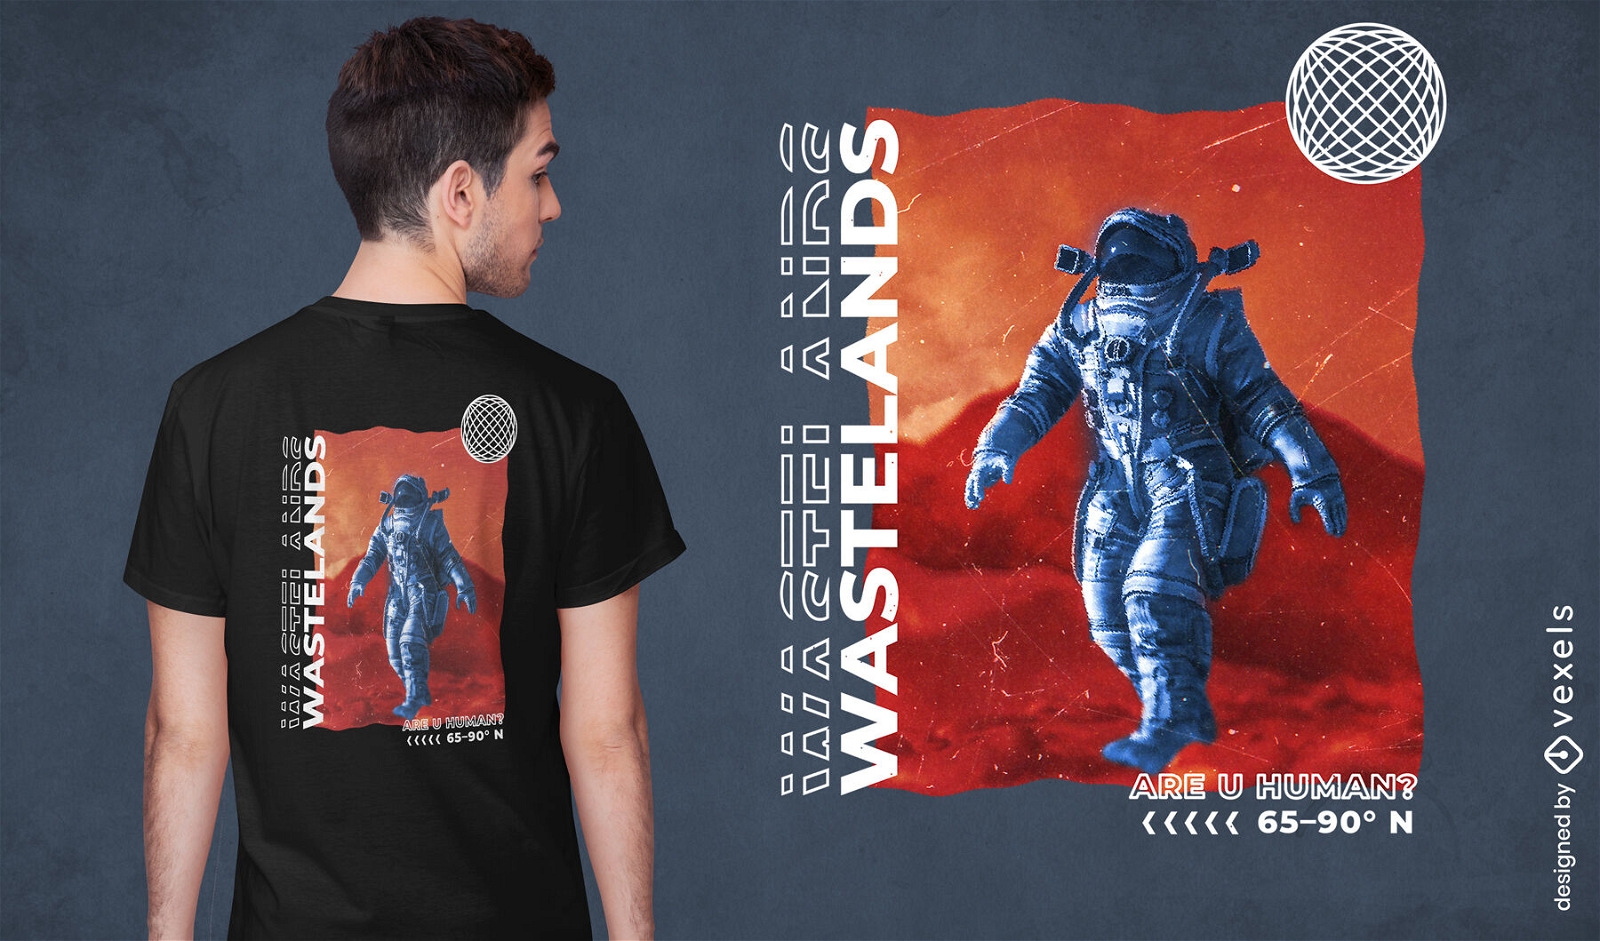 Wastelands astronaut t-shirt psd